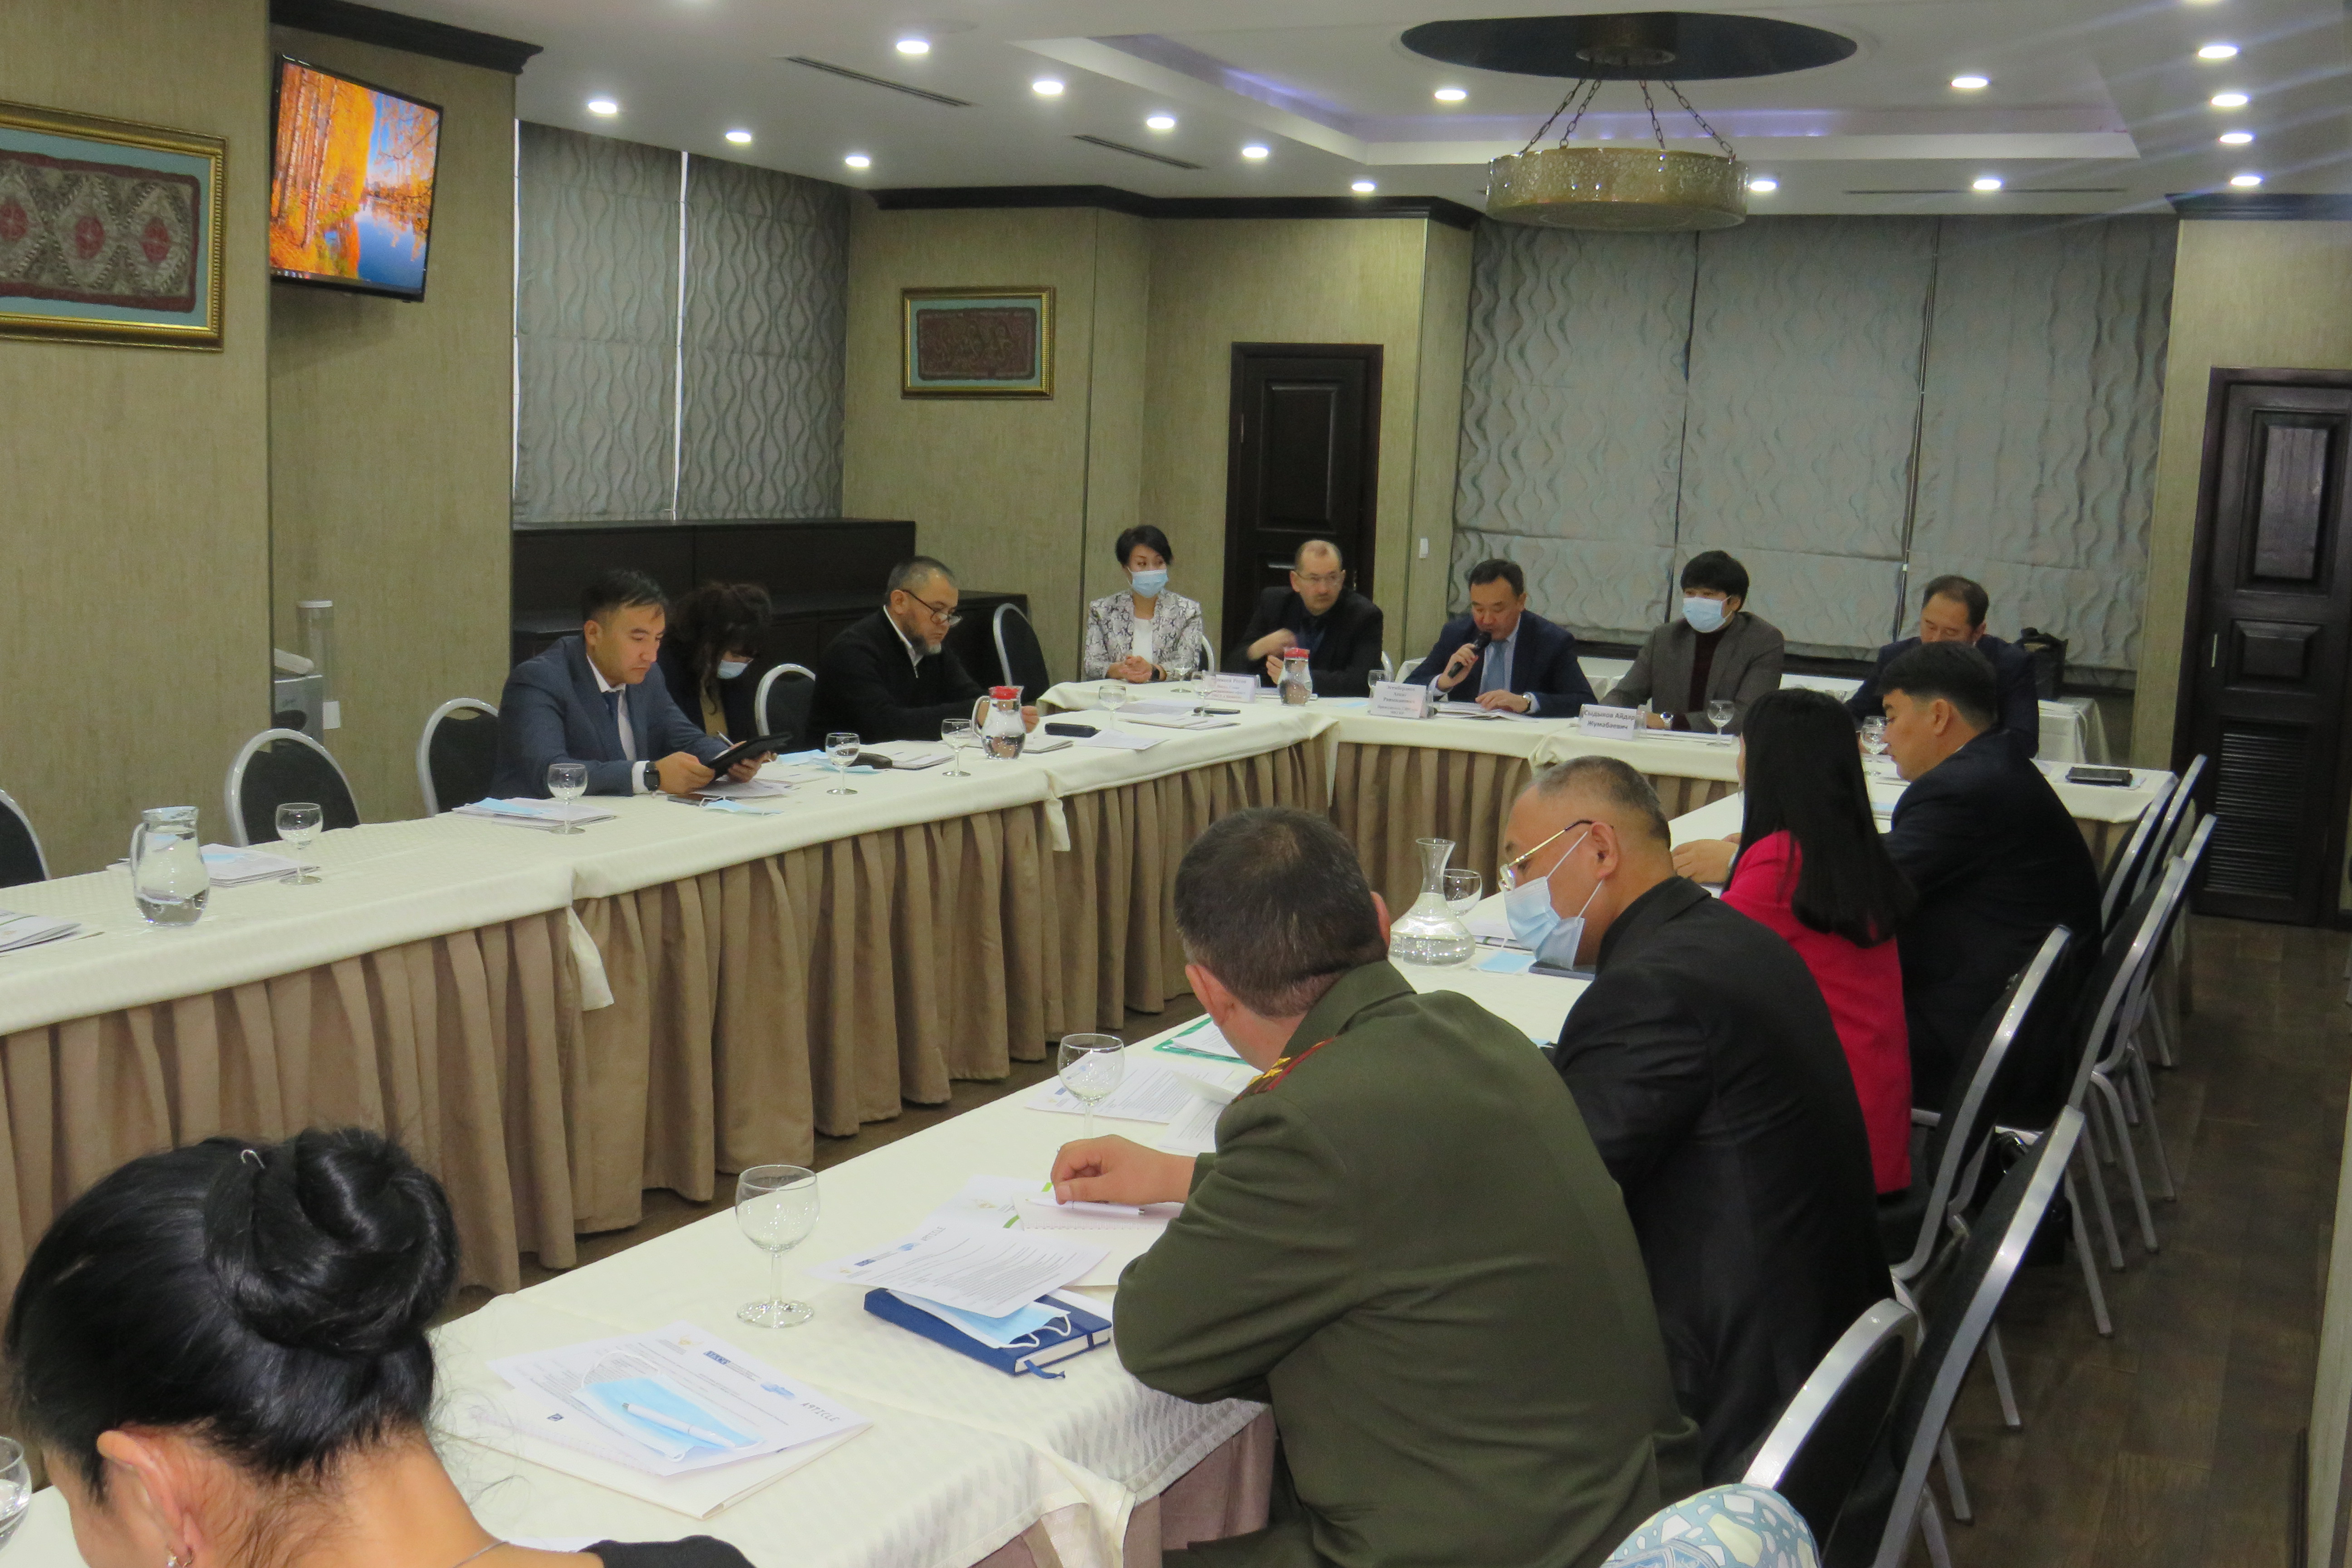 (Рус) В Бишкеке прошел круглый стол по вопросам реализации Бангкокских правил в следственных изоляторах